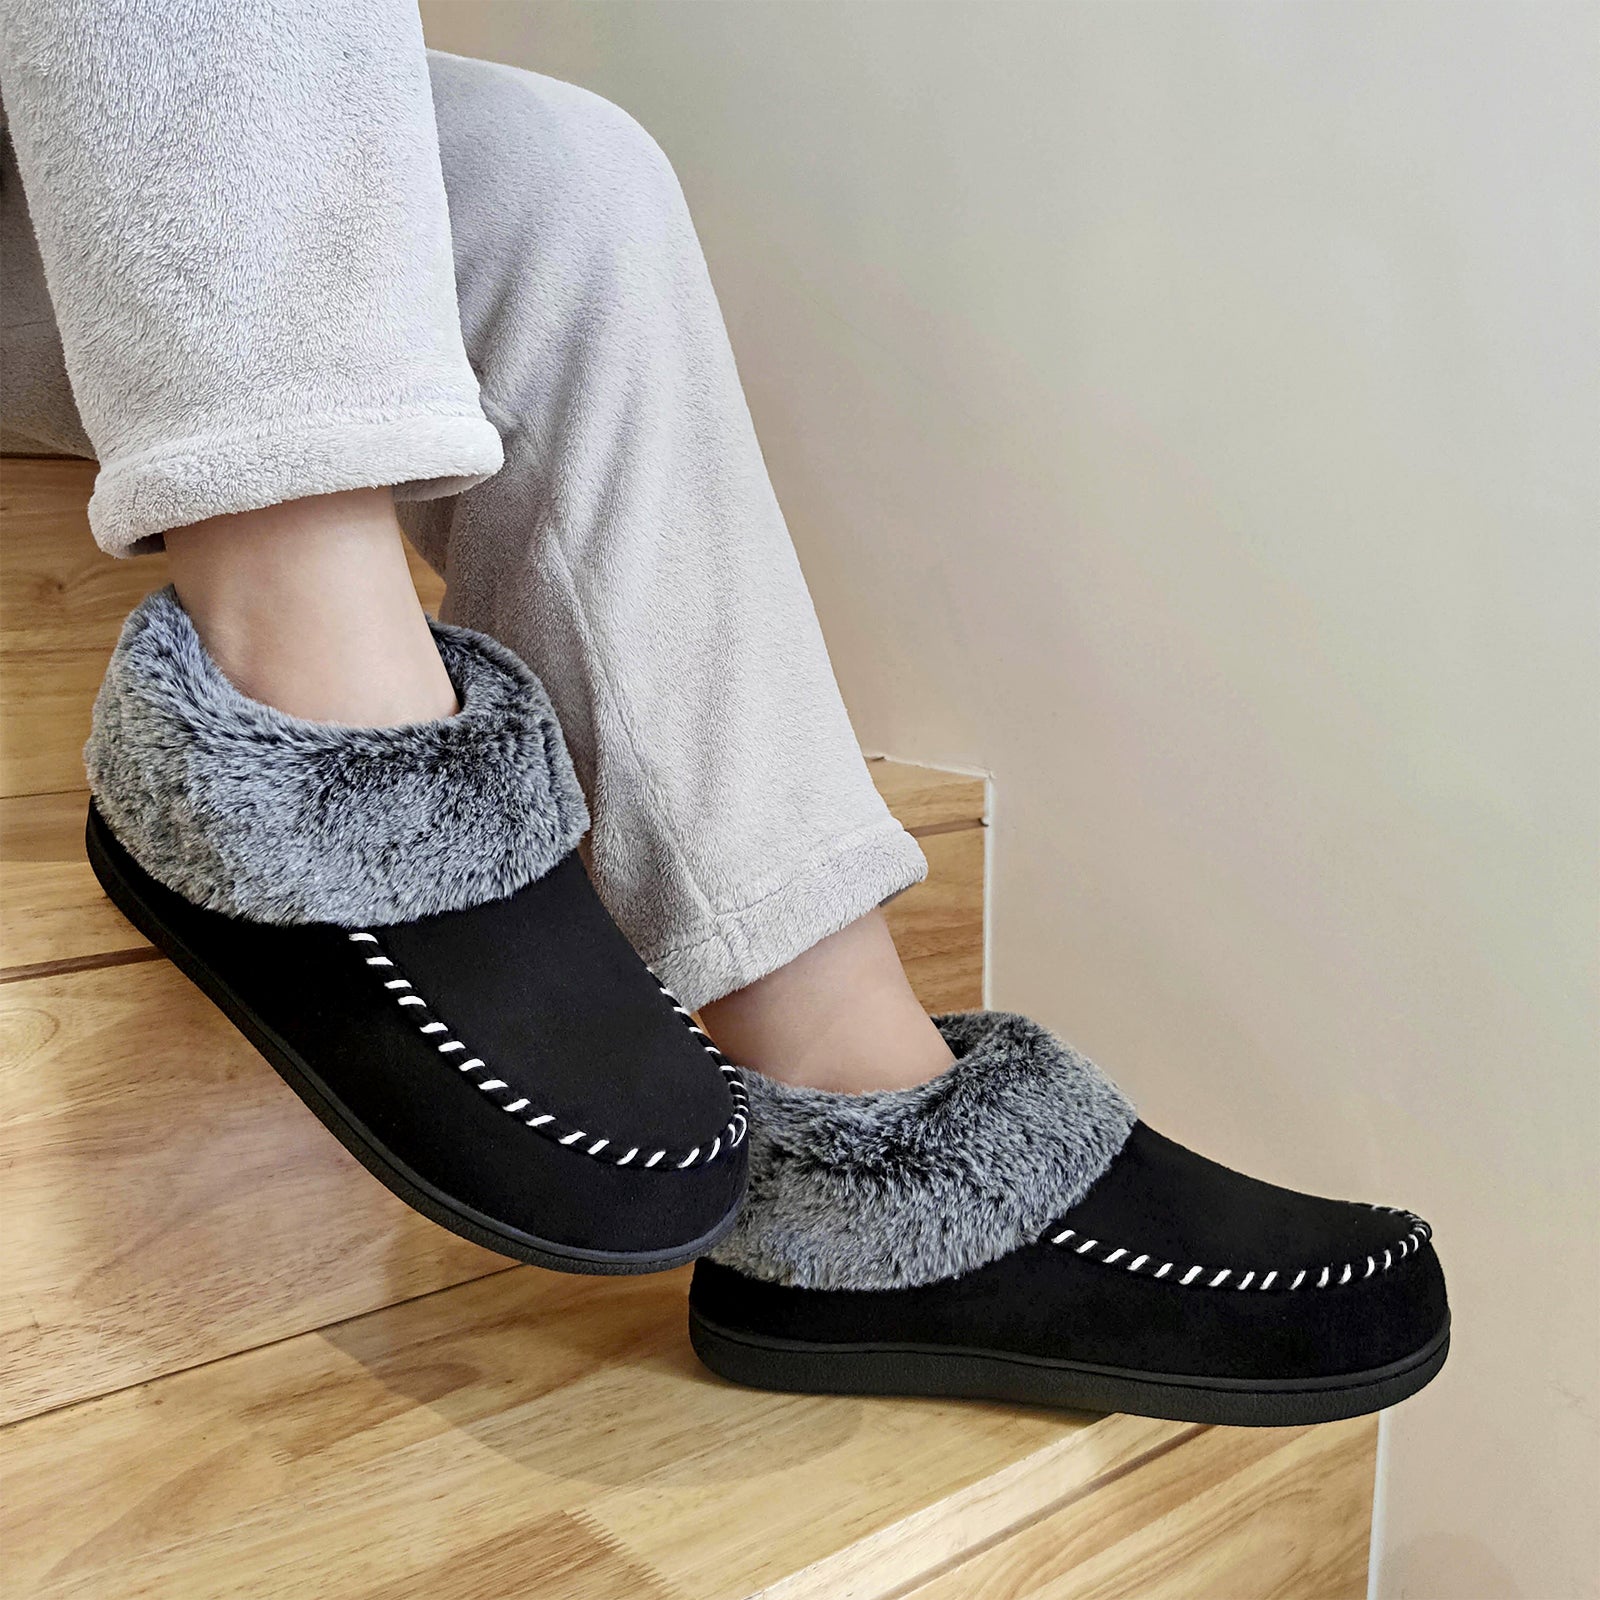 VONMAY Women's Fuzzy Slippers Booties Indoor Outdoor House Shoes 